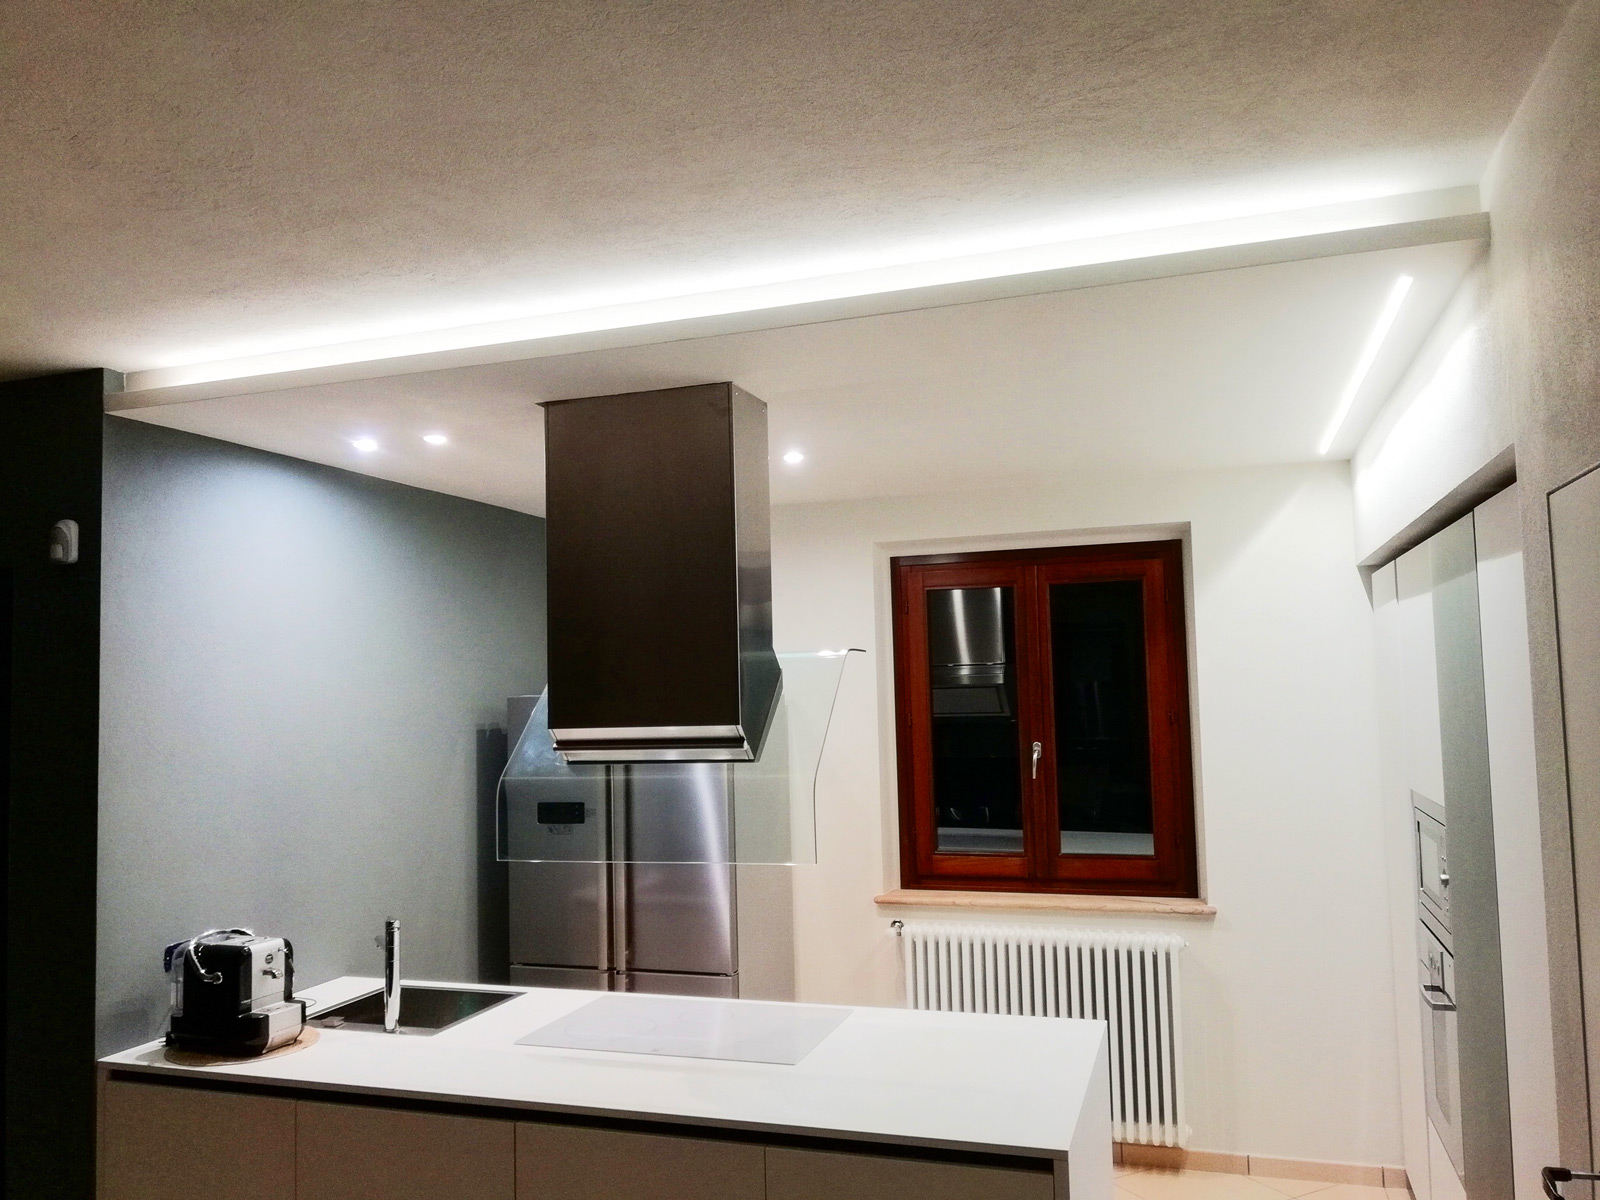 Dettagli Illuminazione moderna a led per una cucina a led a Castellinaldo D'Alba (CN)